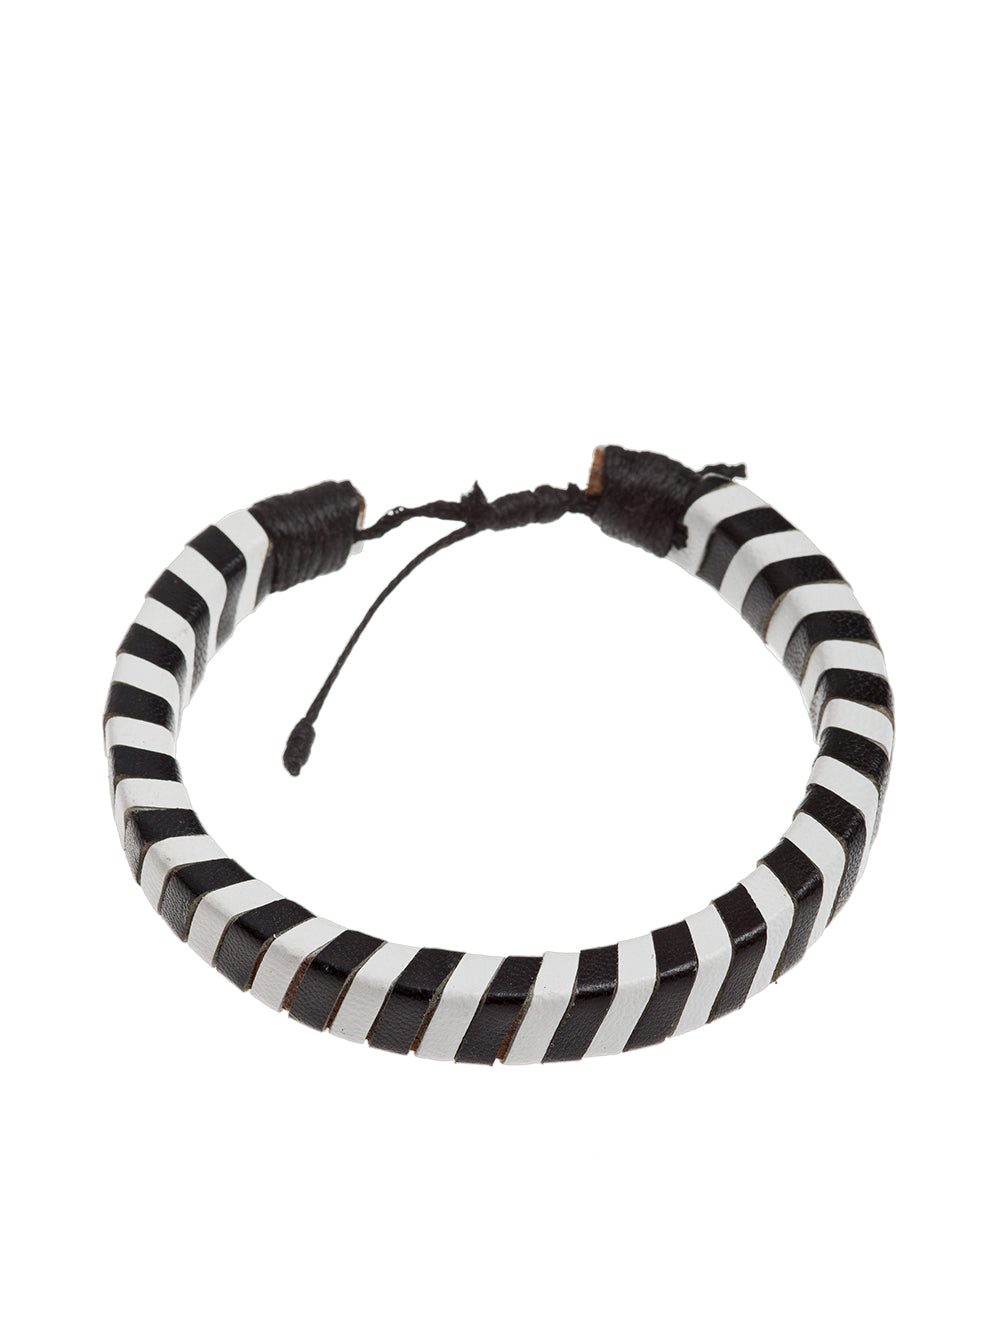 Leather bracelet Black/White